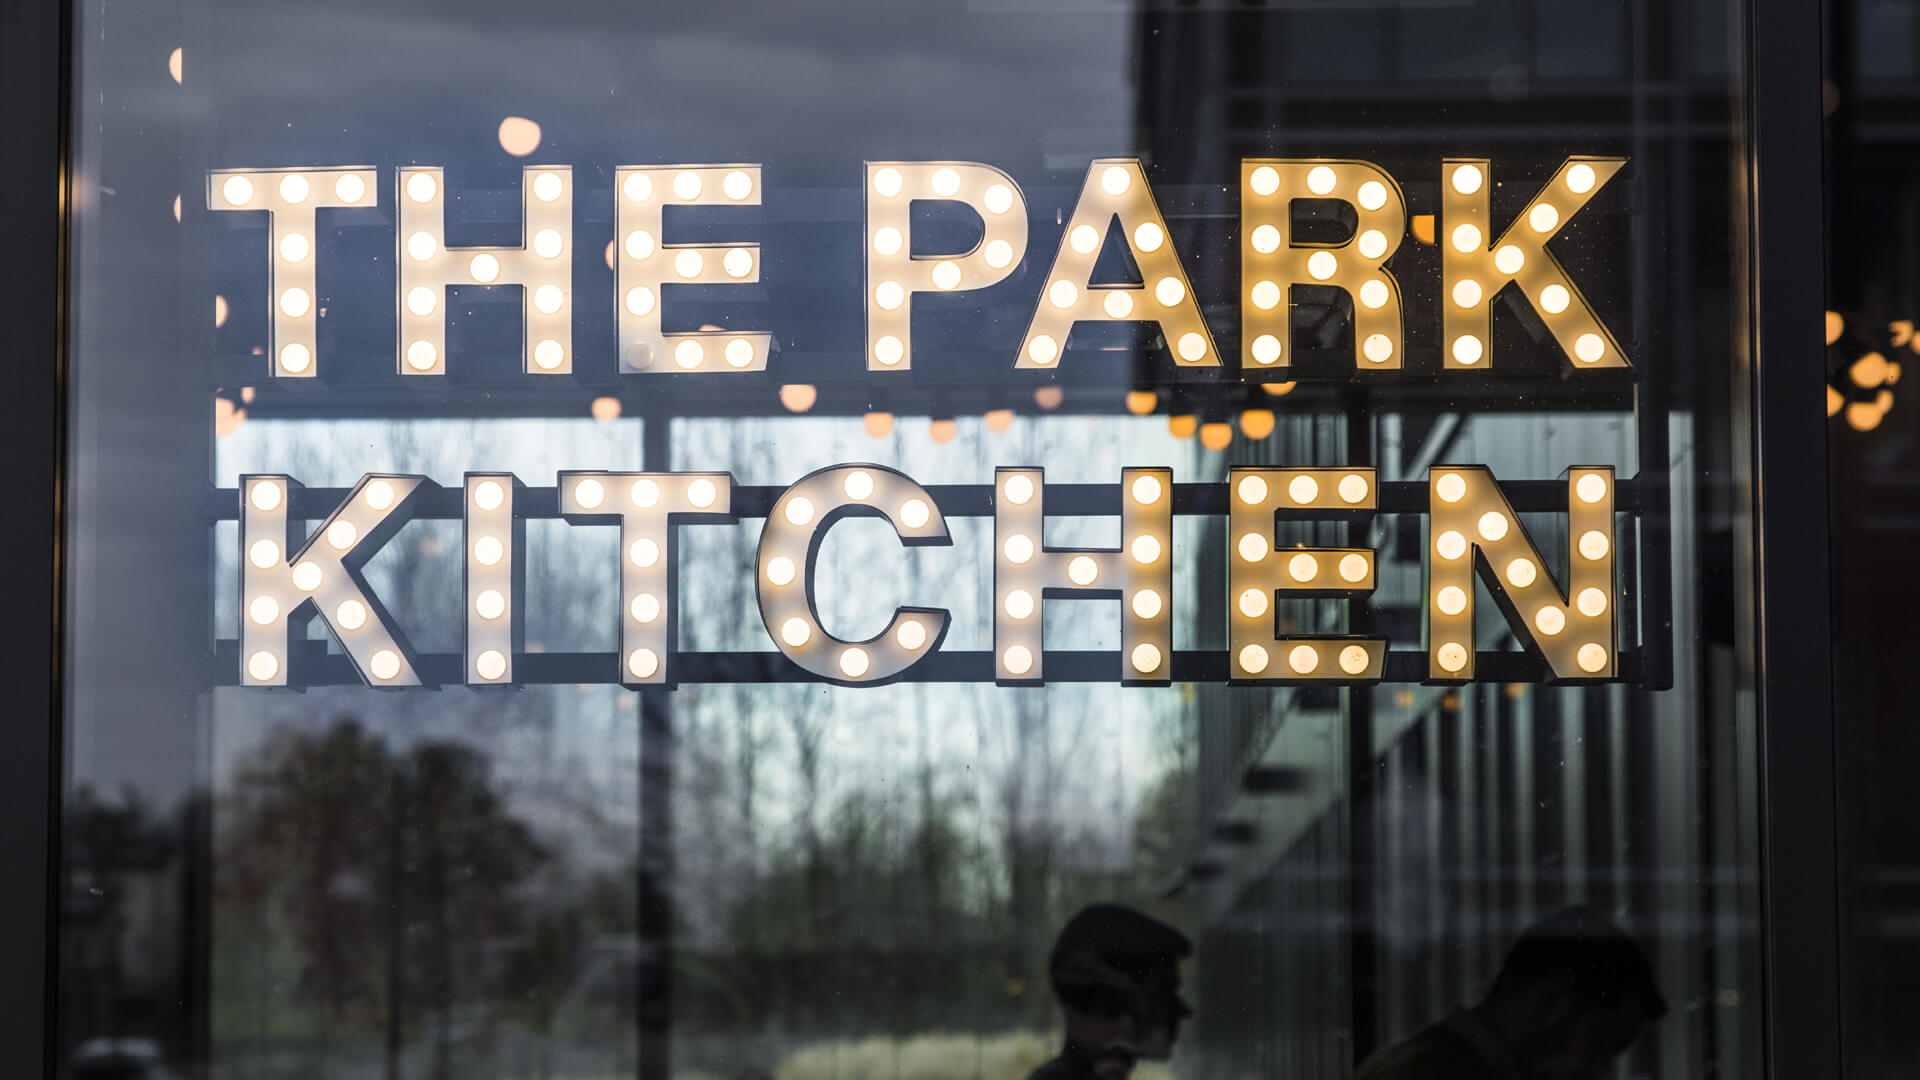 La cucina del parco - The Park Kitchen - piccole lettere con lampadine poste dietro il vetro